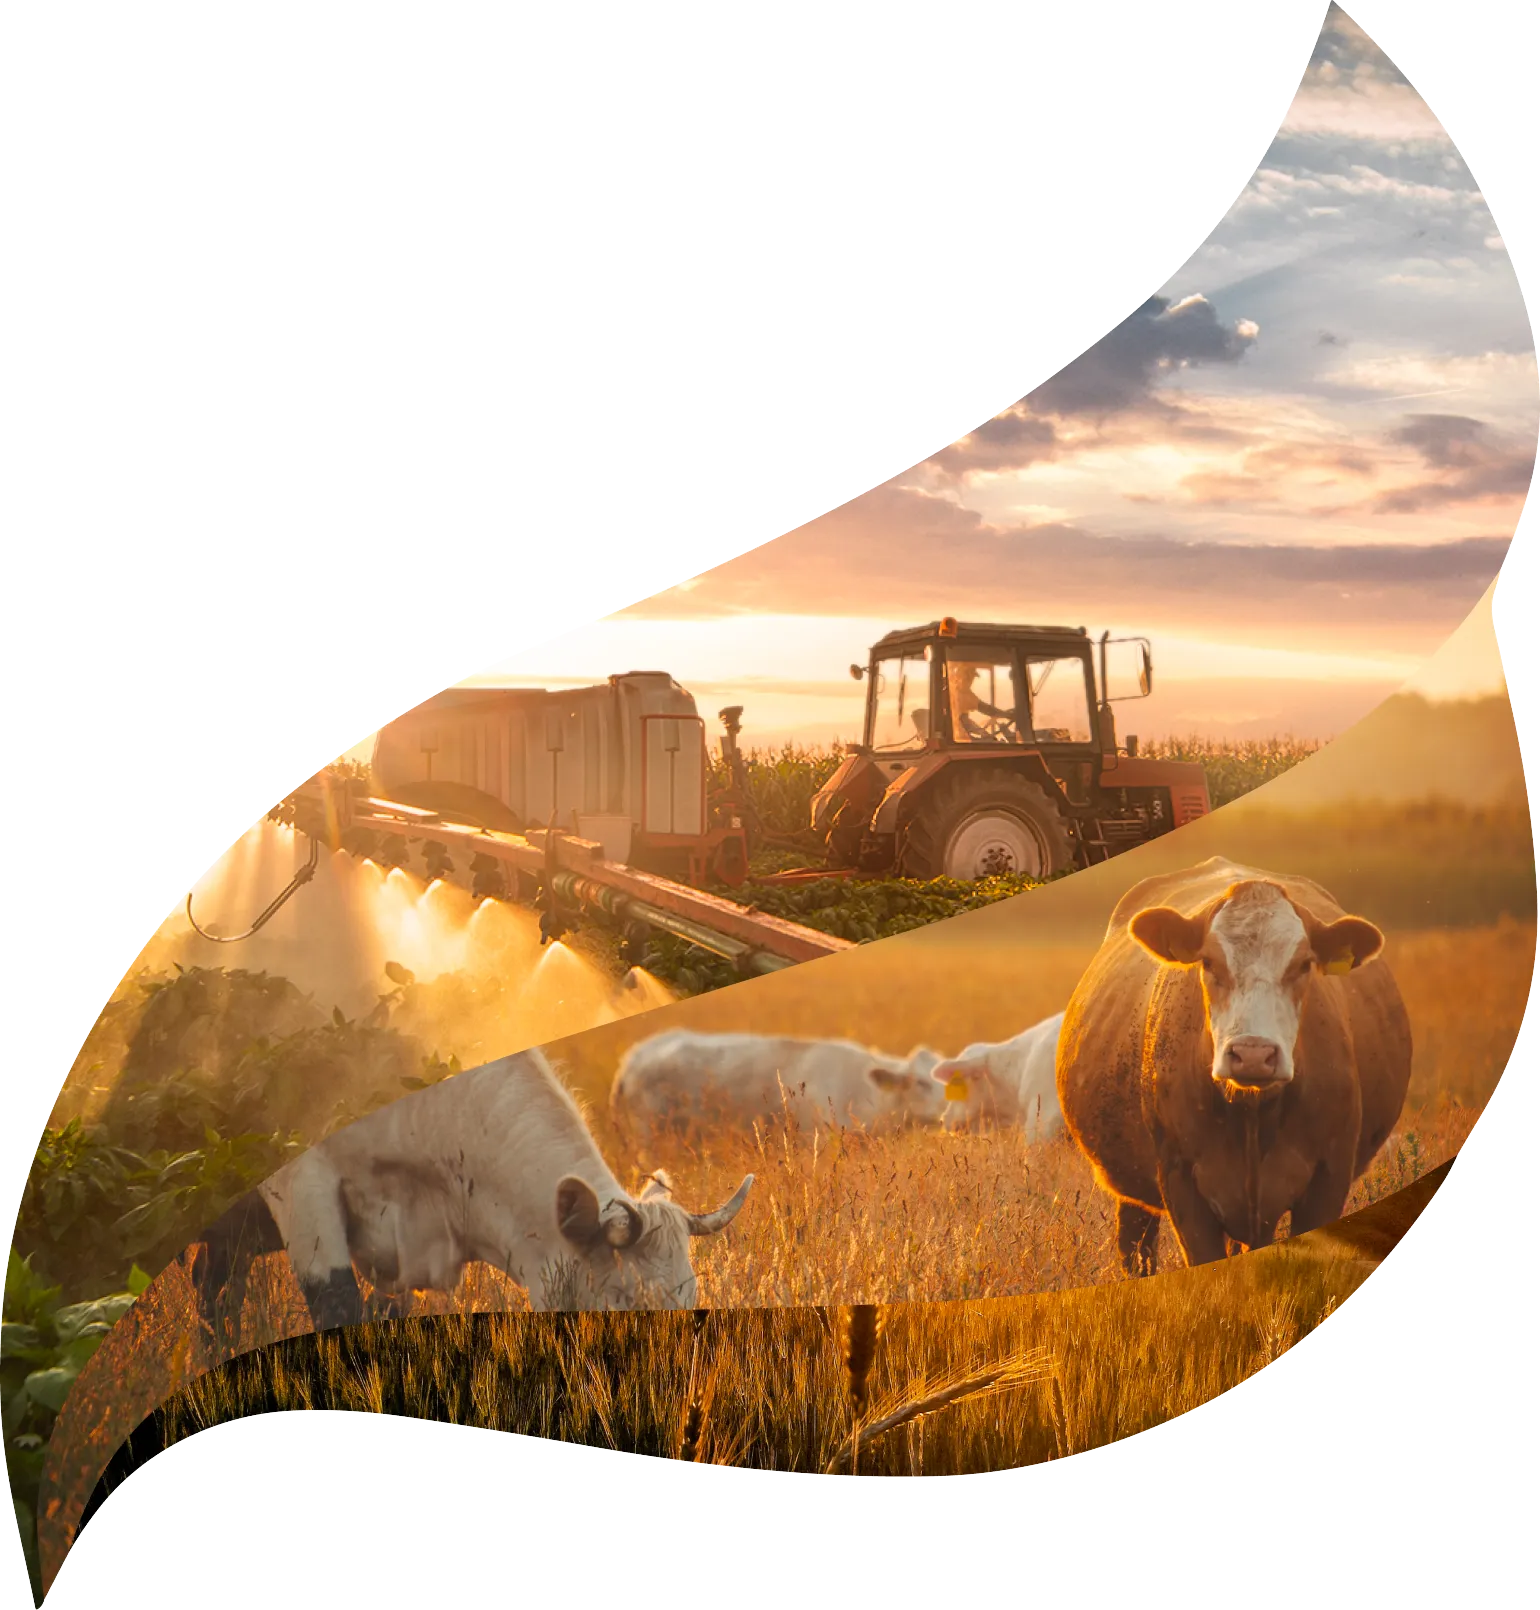 Bois e fazendas com o símbolo da NortInvest